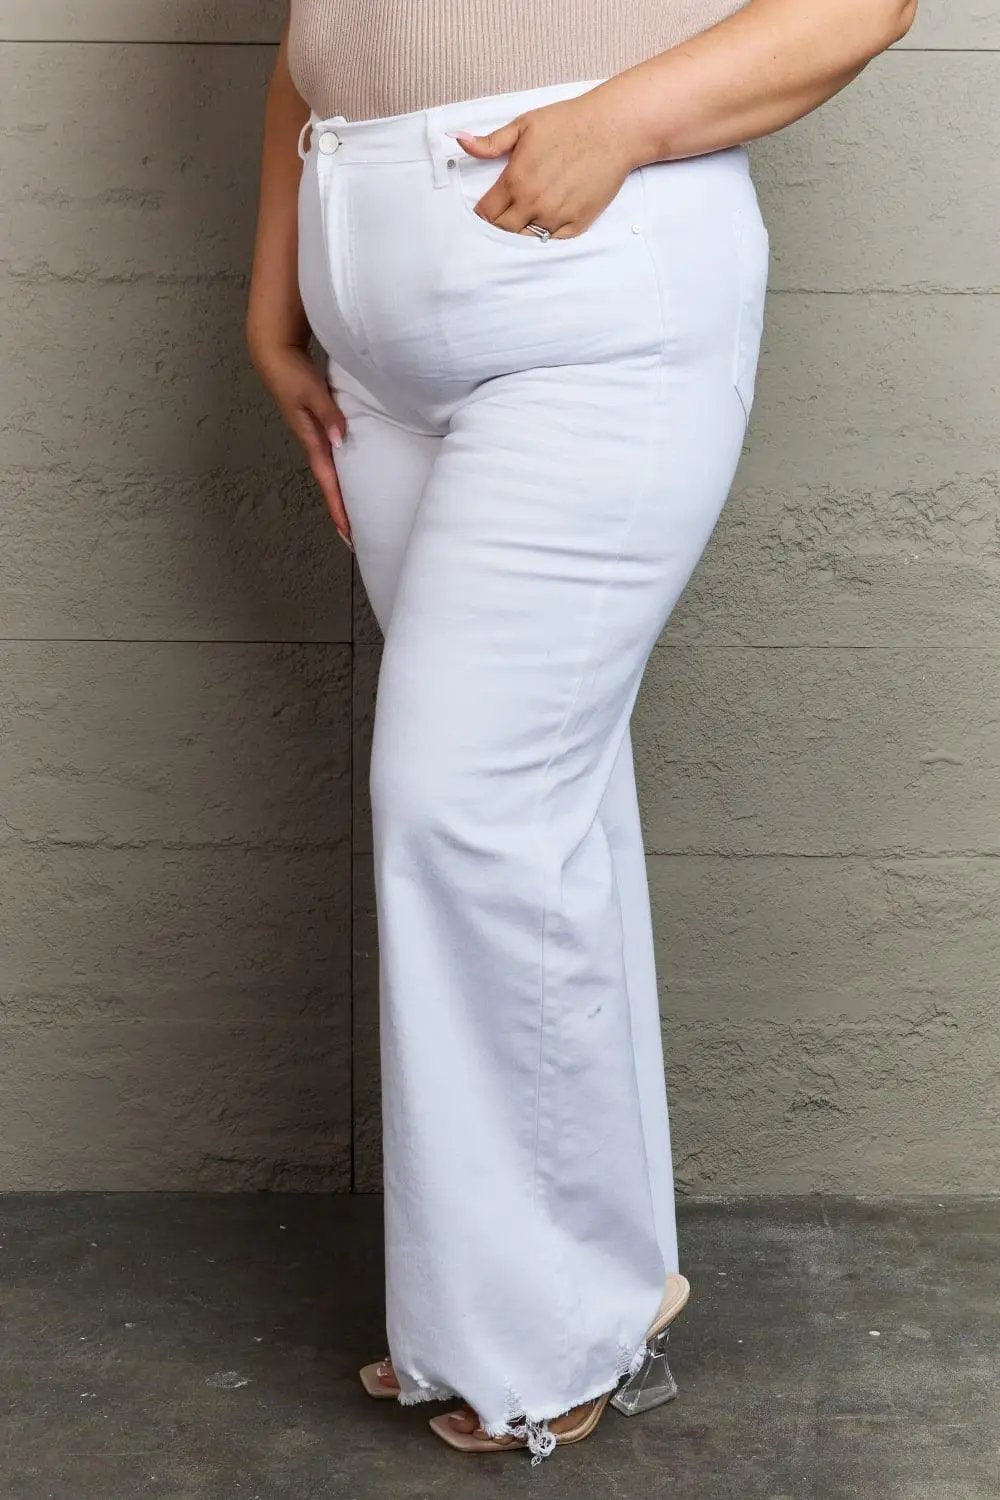 RISEN Raelene Full Size High Waist Wide Leg Jeans in White - The Swanky Bee